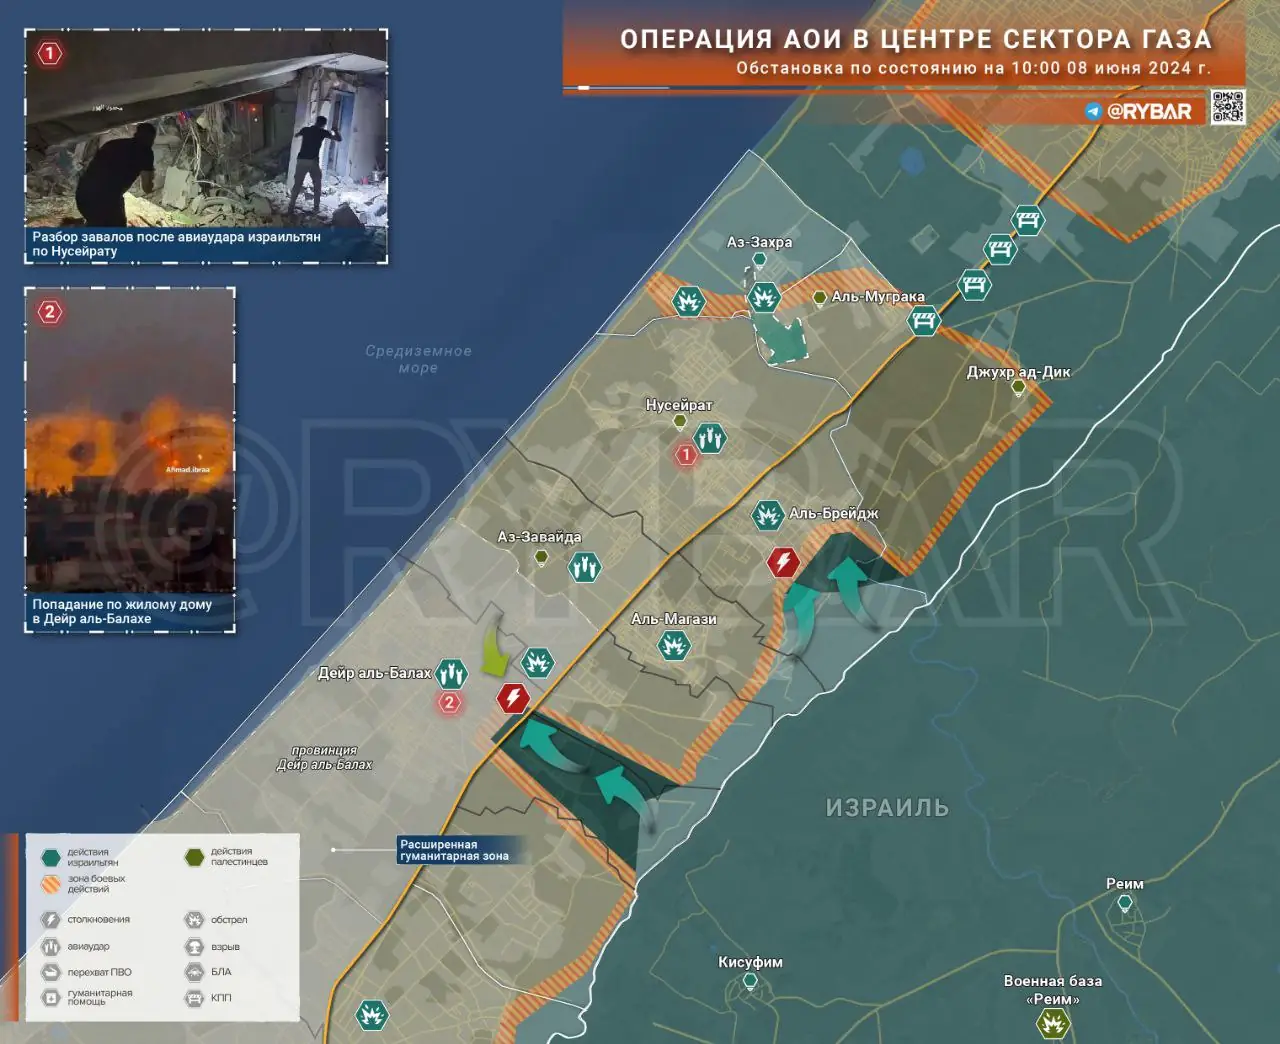 Операция АОИ в центре сектора Газа: наступление в направлении Аль-Брейджа и Дейр аль-Балаха